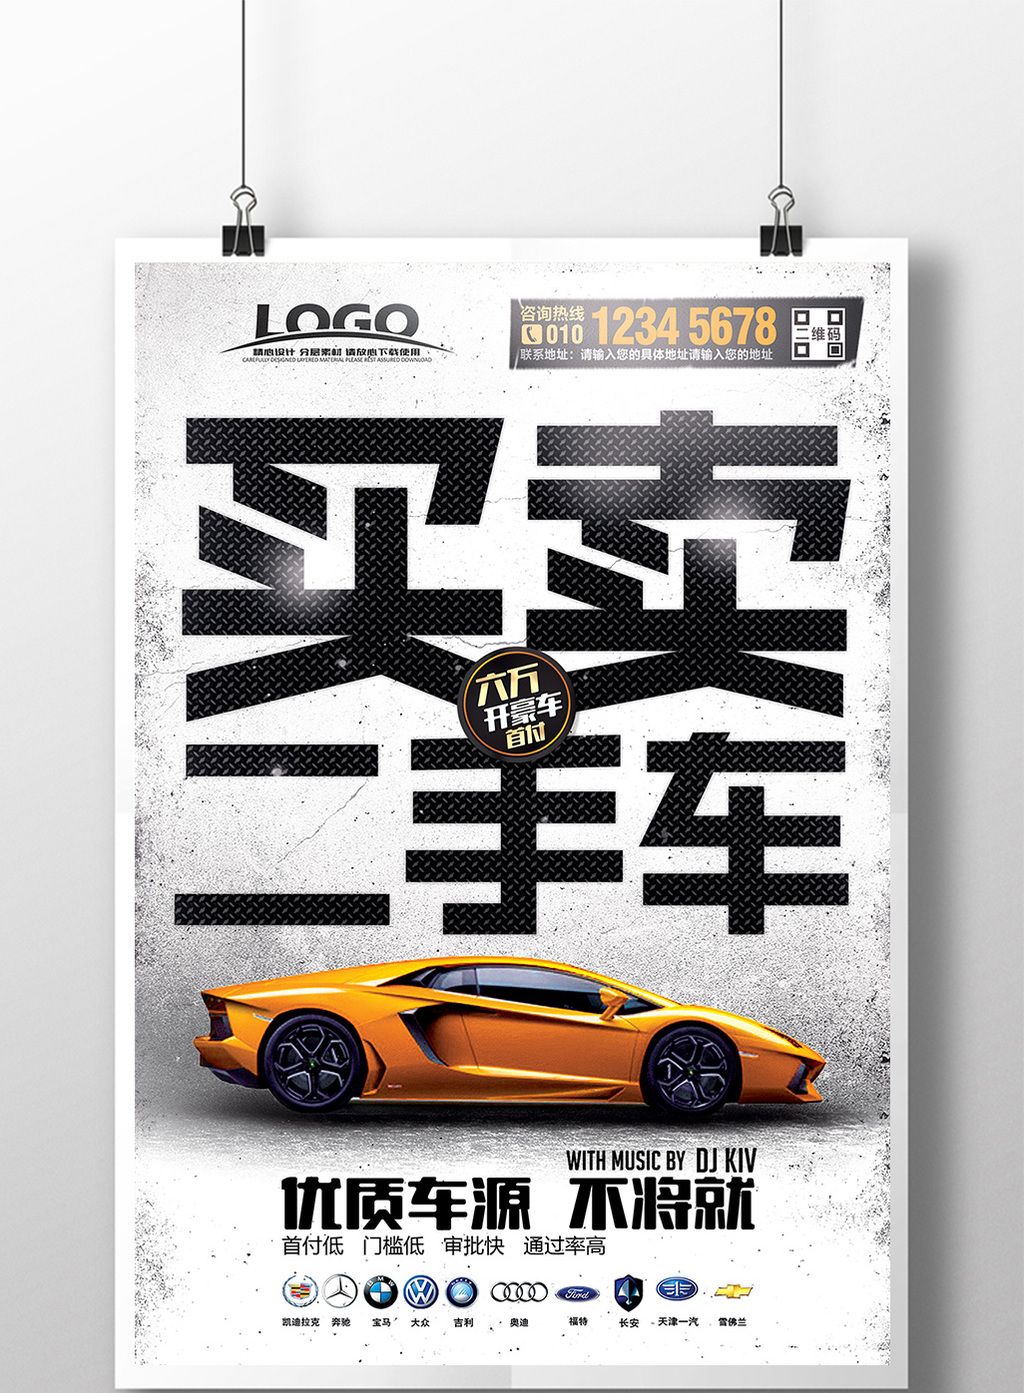 的时尚创意买卖二手车海报设计素材免费下载,本次作品主题是广告设计